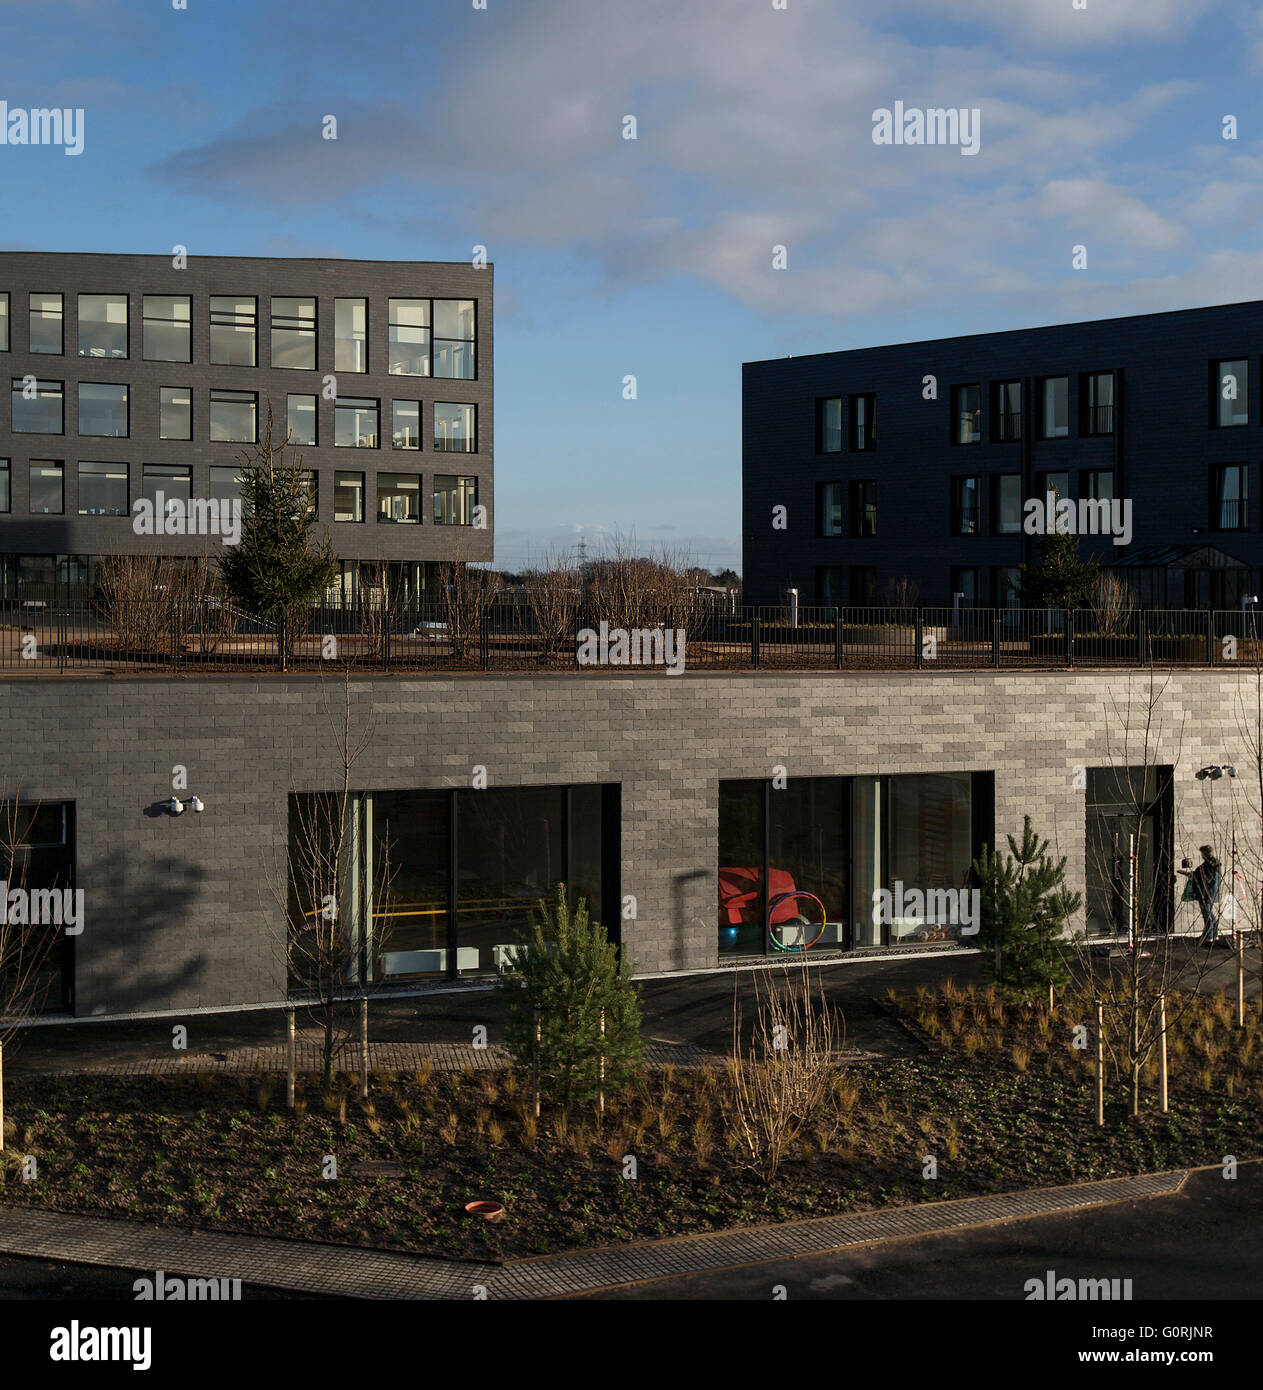 Rathaus und Gesundheitszentrum, Egedal, Dänemark. Blick auf den Dachgarten und die untere Ebene Büros. Stockfoto